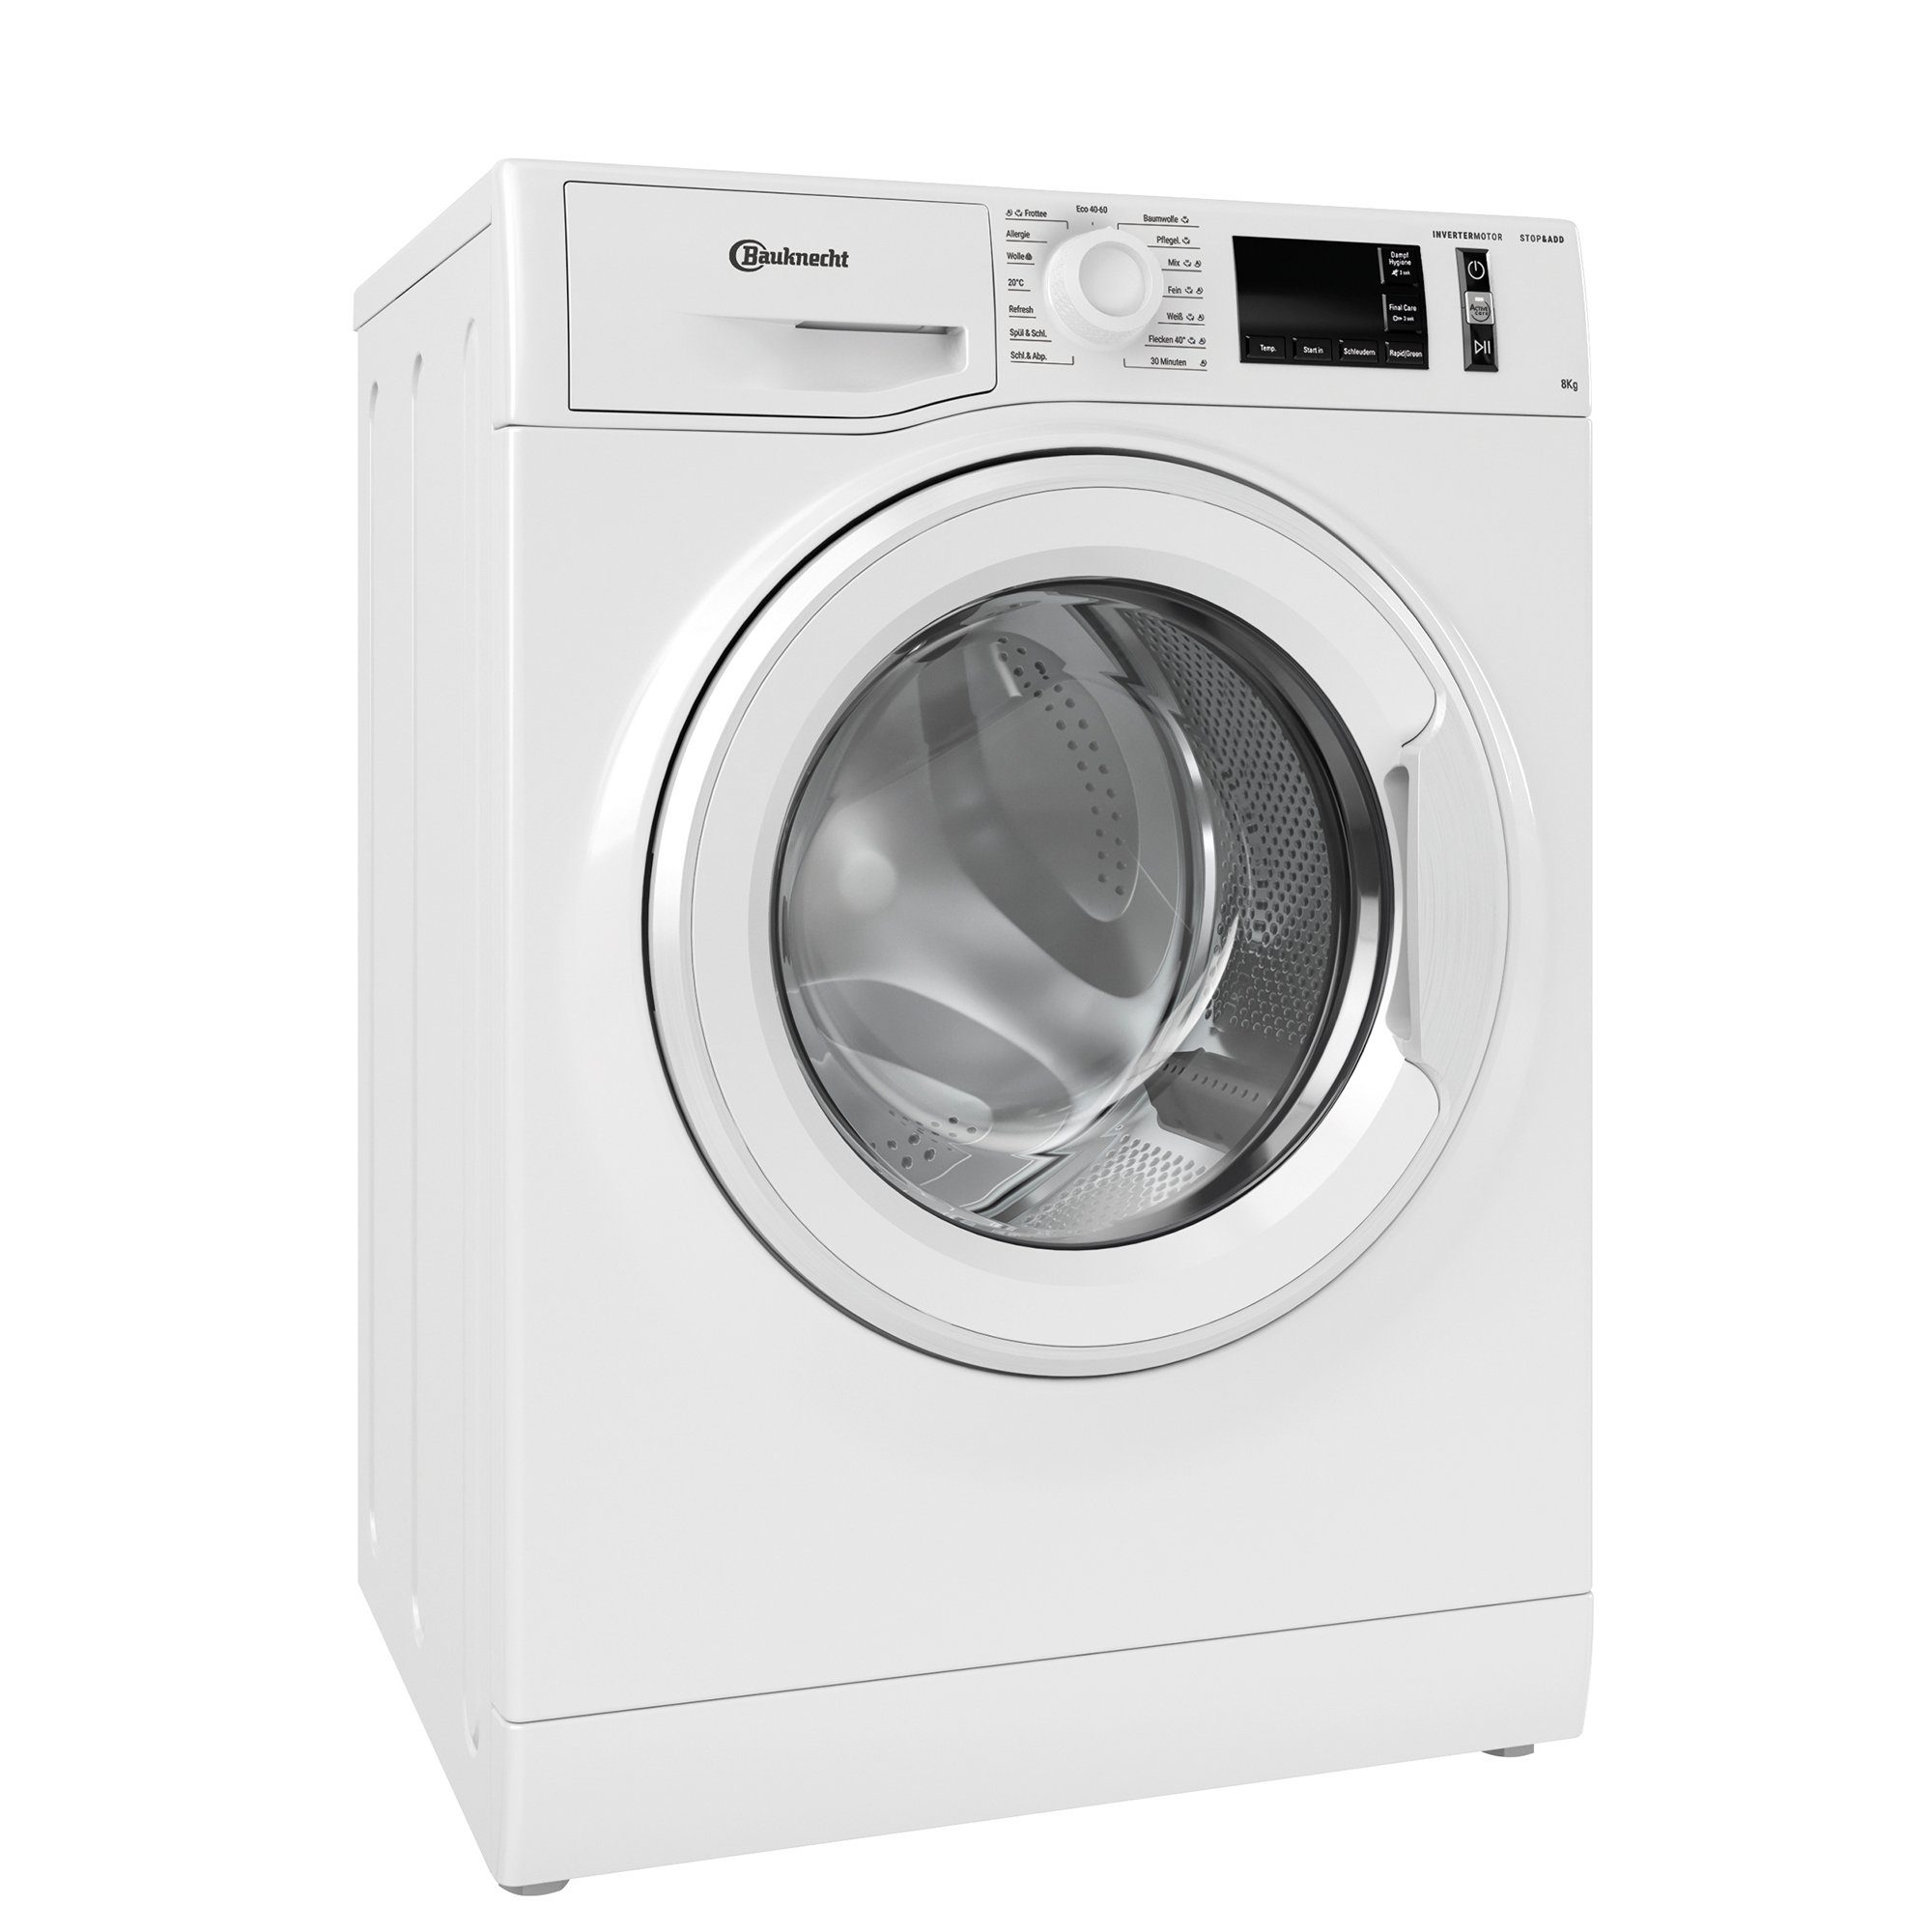 BAUKNECHT Waschmaschine weiss WM 811 A, 8 kg, 1400 U/min, Dynamic  Inverter-Motor, Mehrfachwasserschutz +, Nachlegefunktion